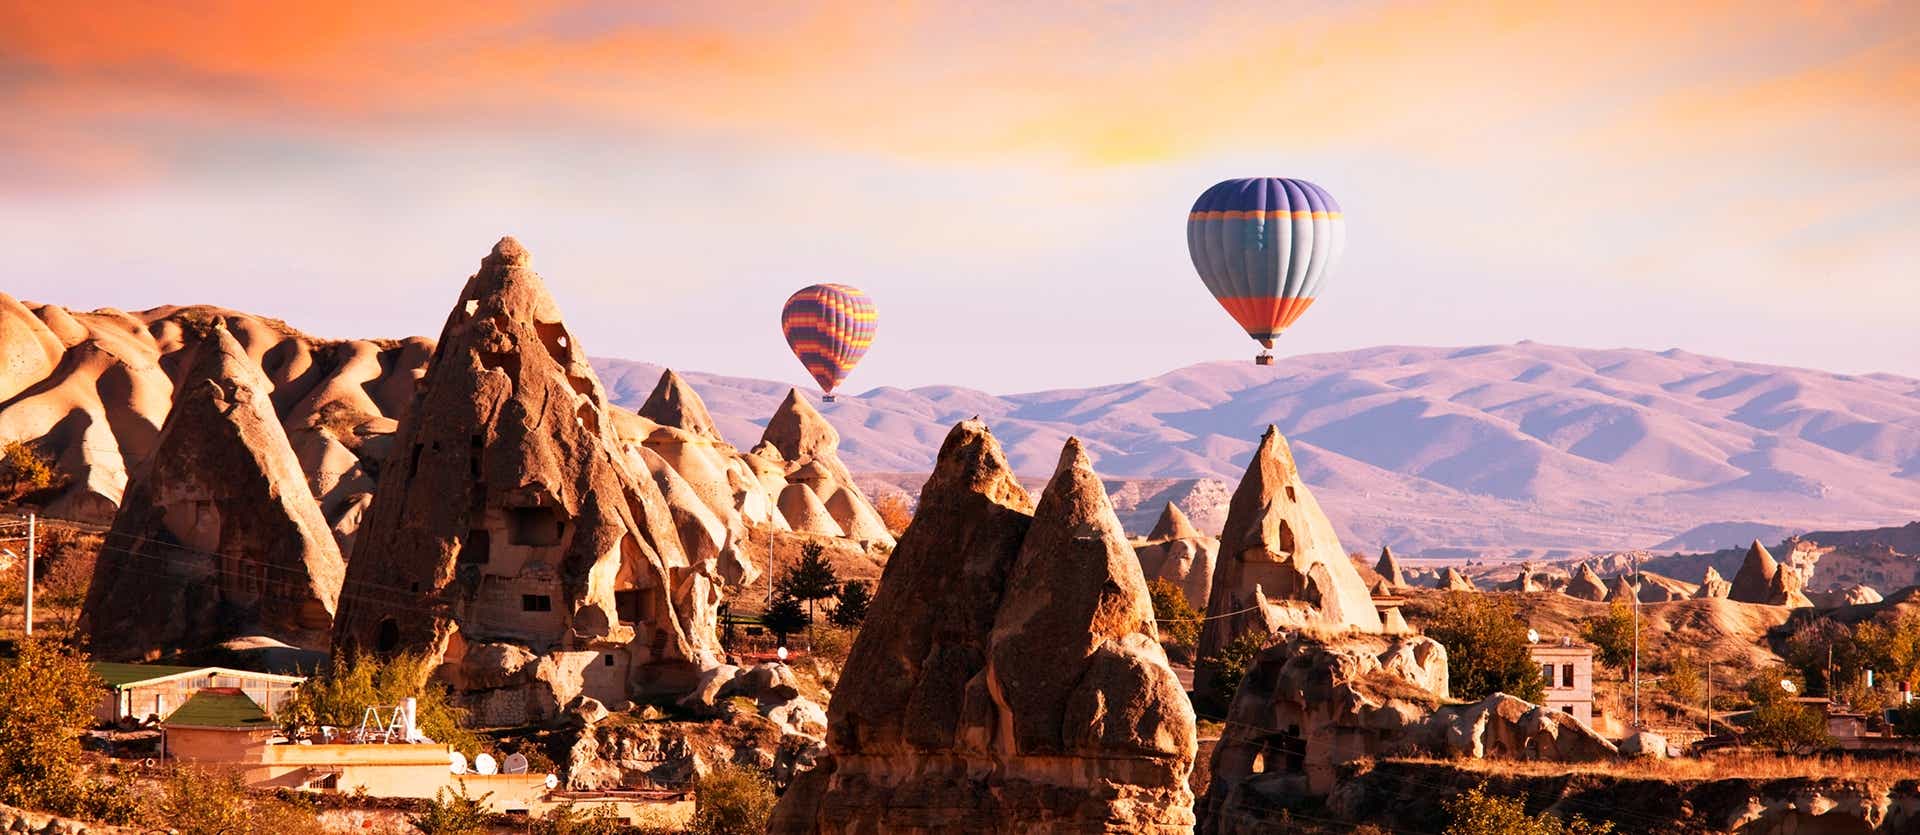 Hot Air Balloons <span class="iconos separador"></span> Cappadocia 